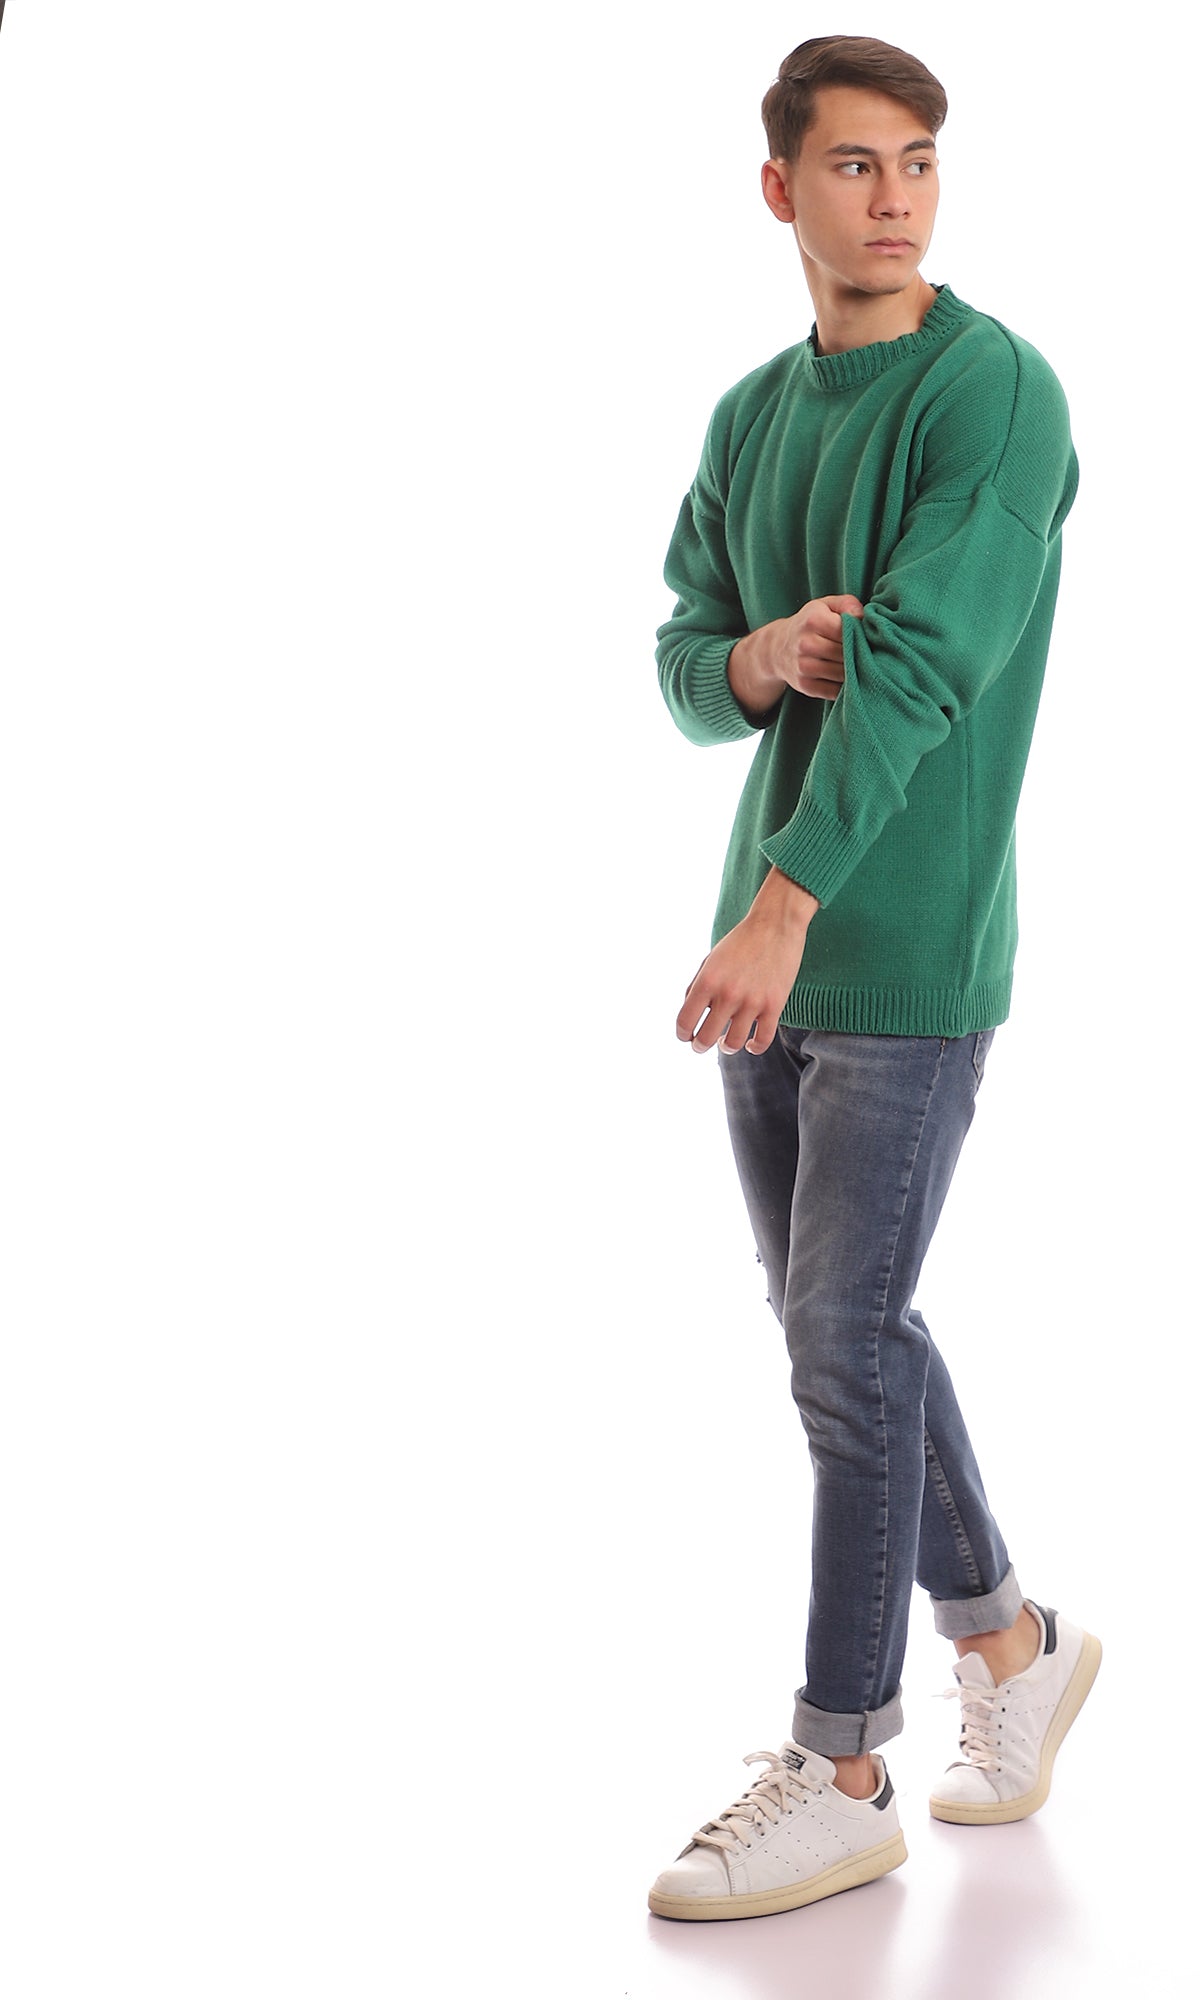 98067 Medium Green Slip On Knitted Pullover